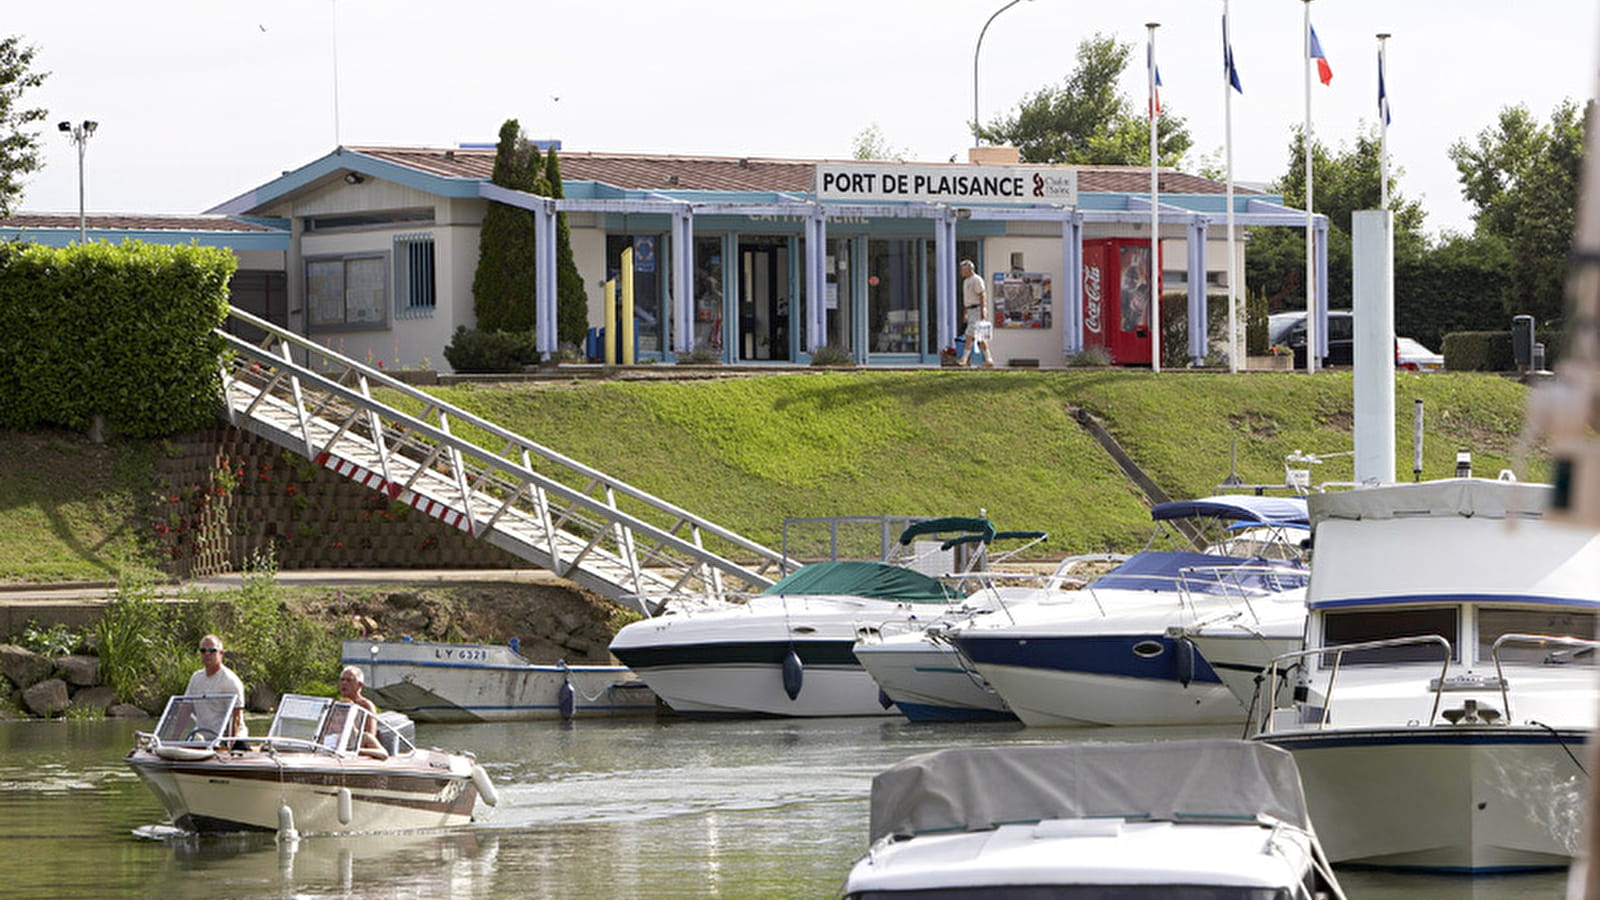 Port de plaisance de Chalon-sur-Saône